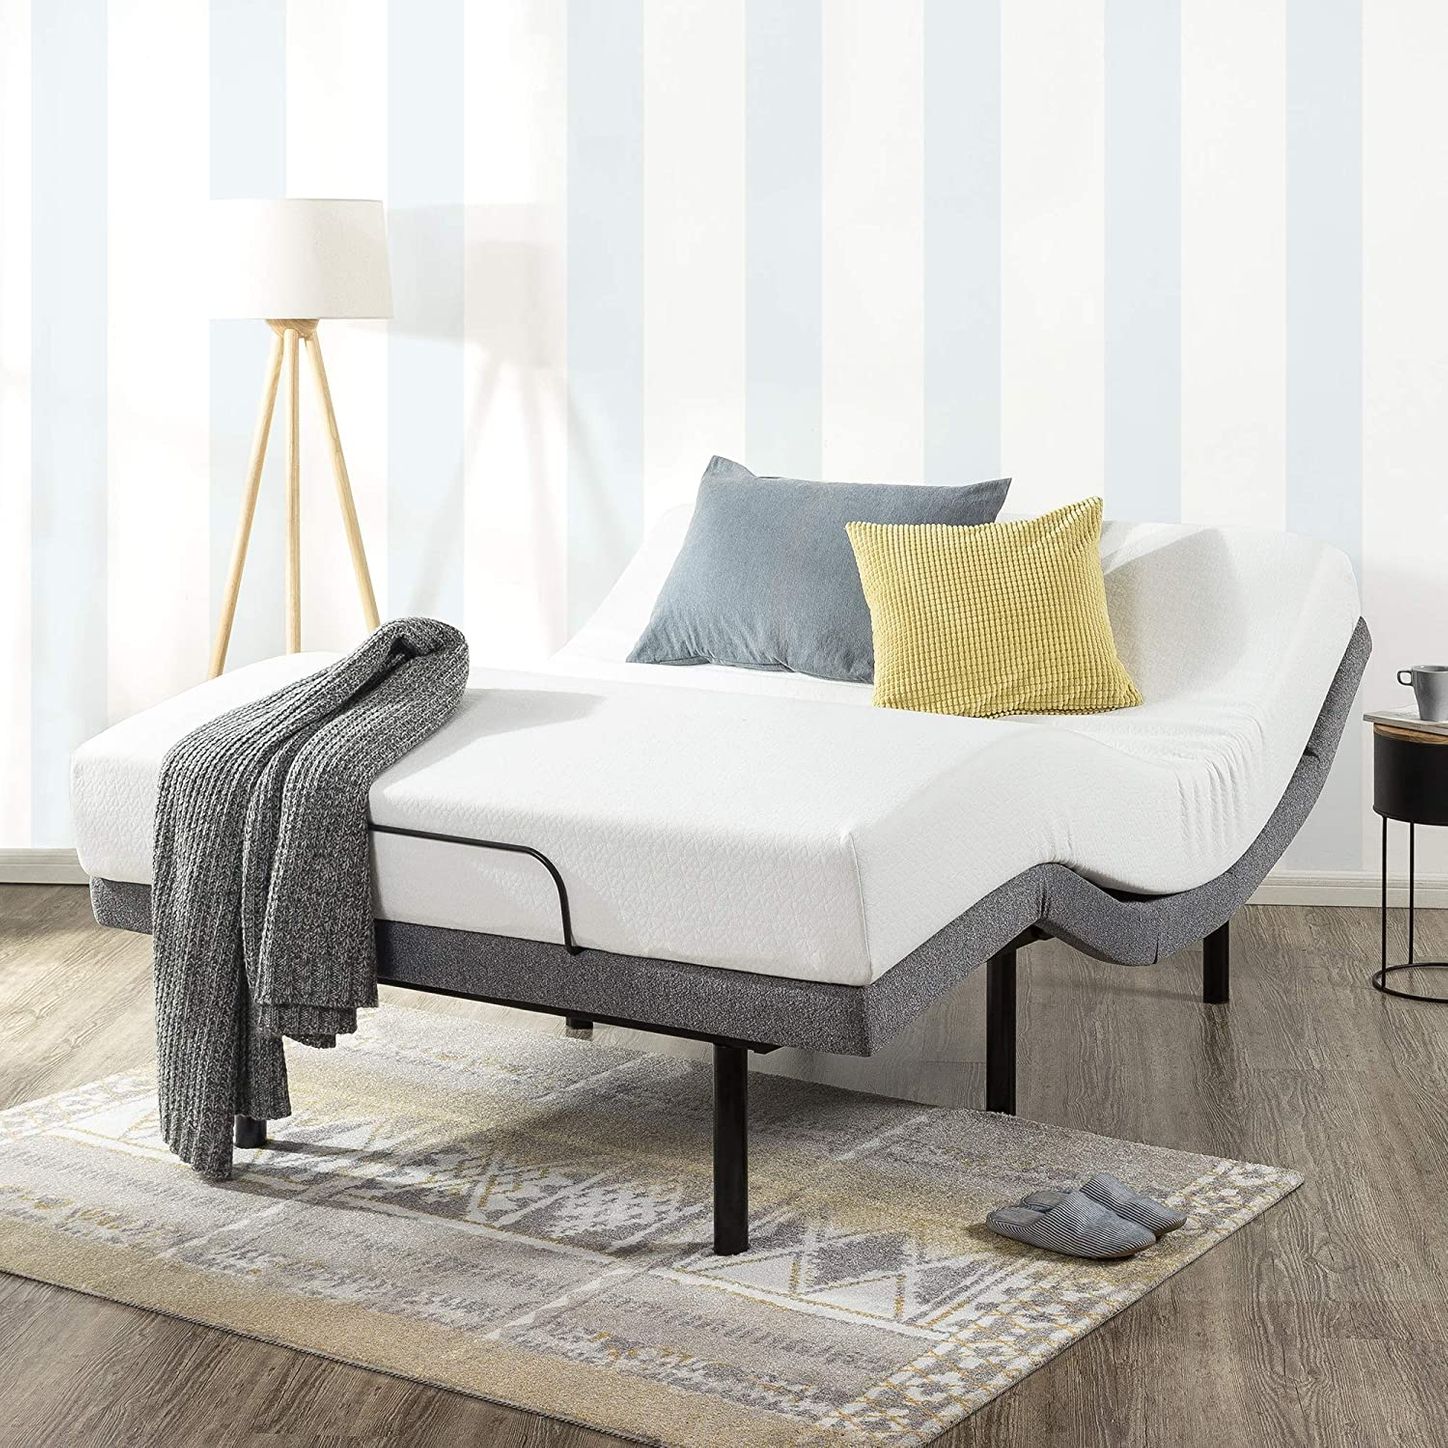 10 Best Adjustable Bed Bases 2022 The, Best Motorized Bed Frame